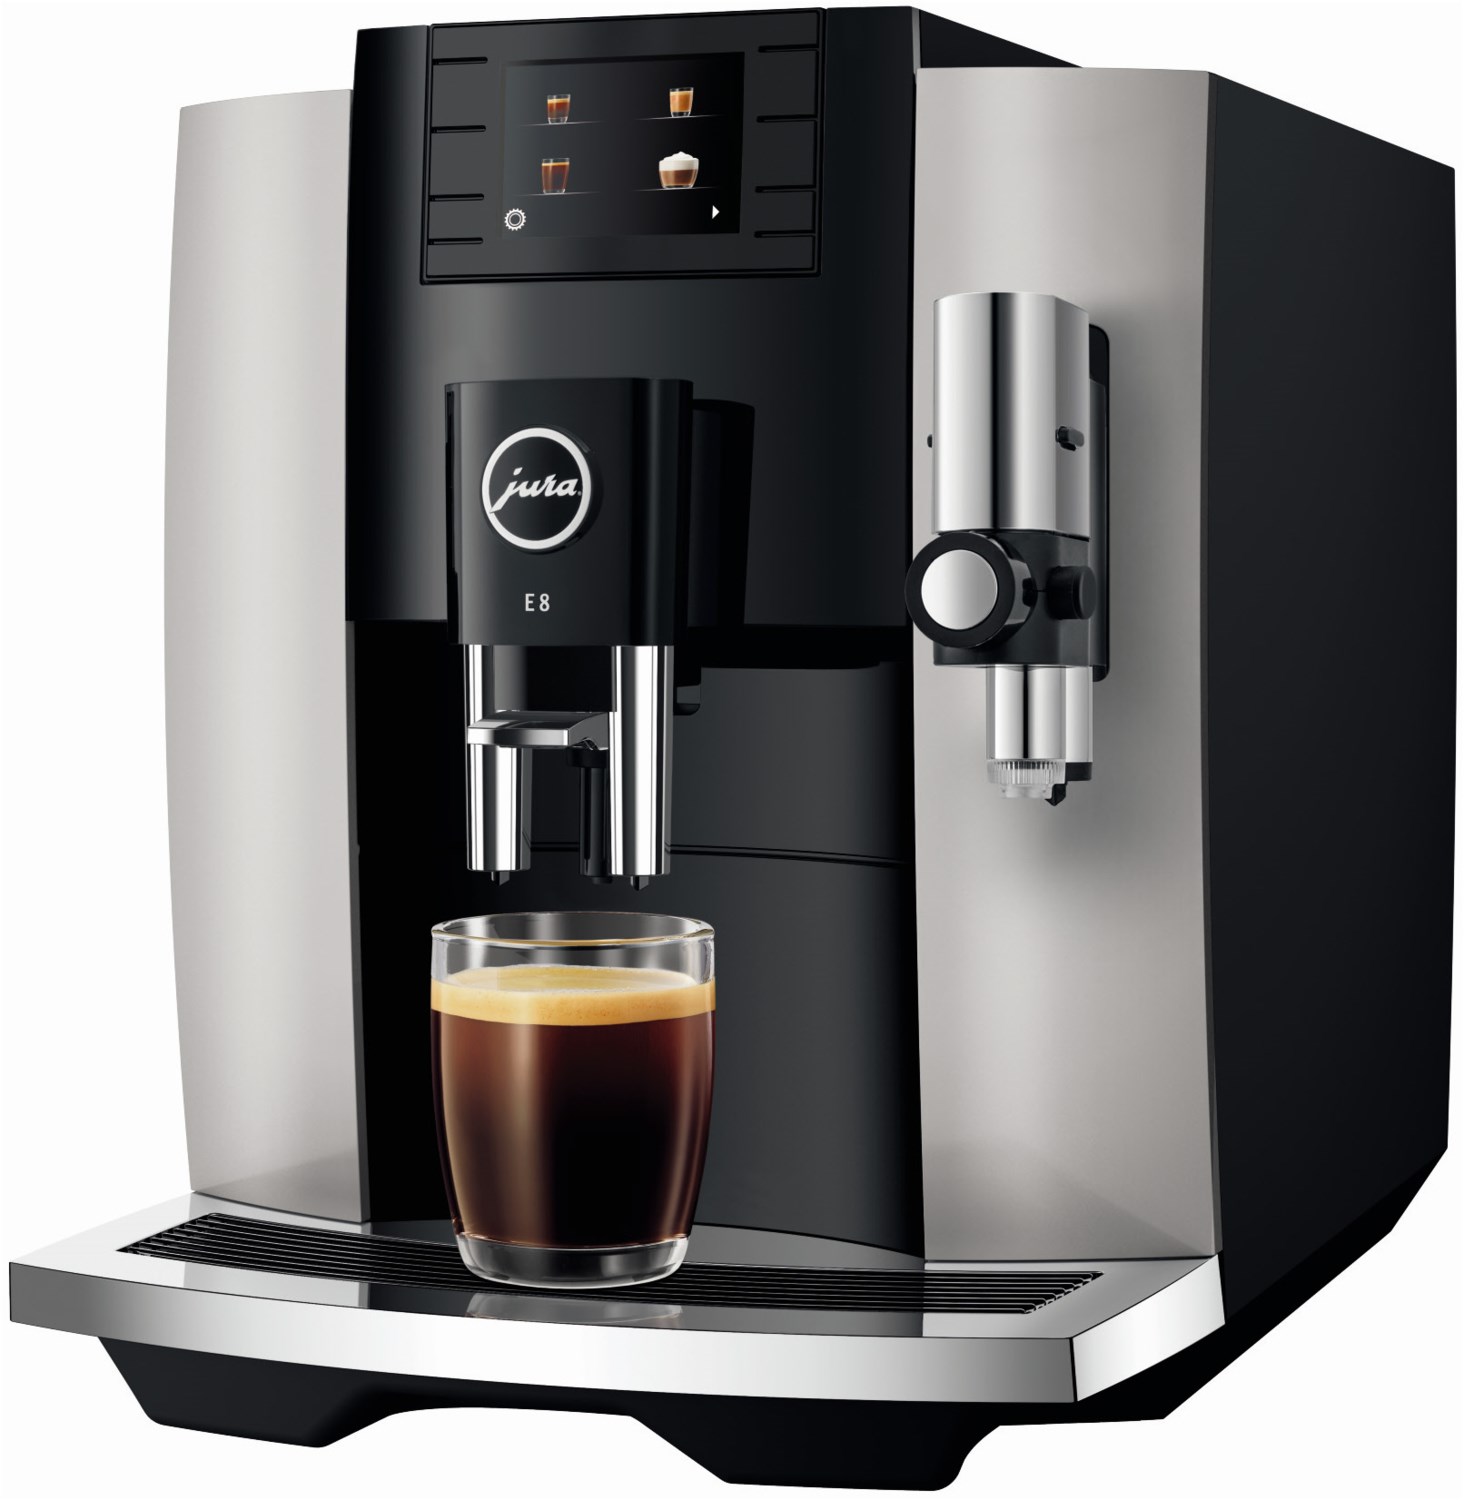 E8  Kaffee-Vollautomat Platin (EB)